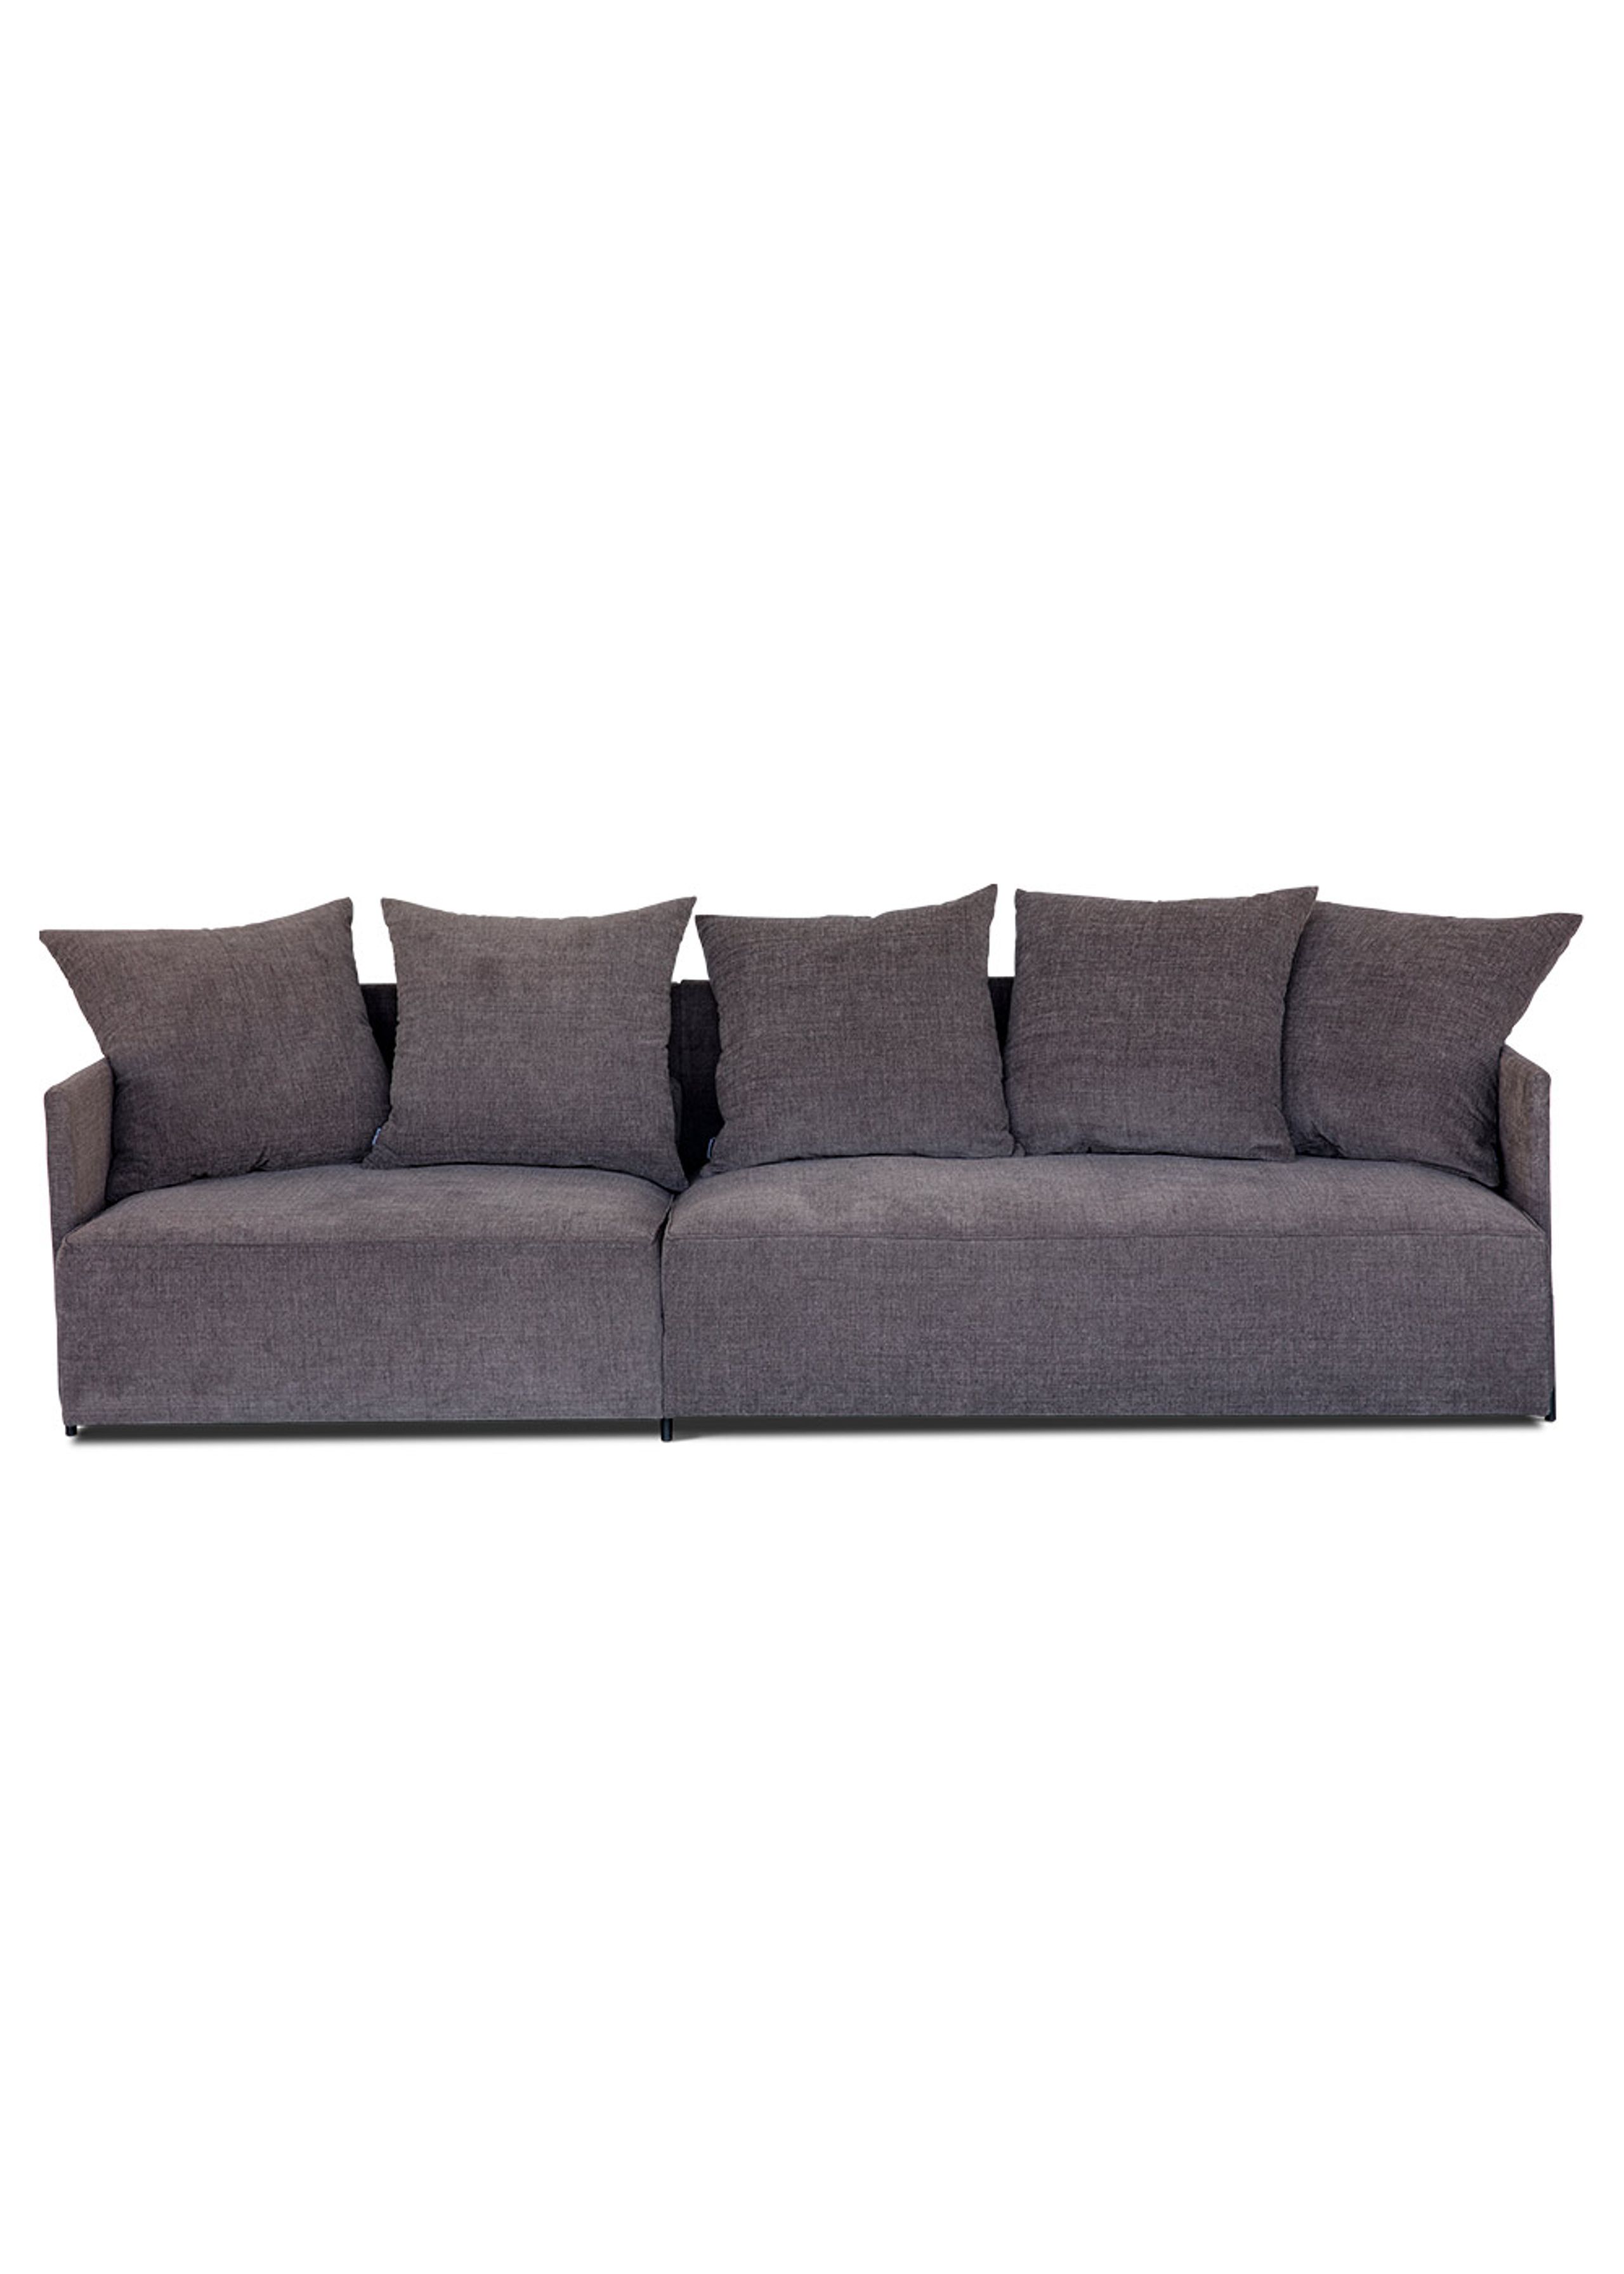 Bent Hansen - Canapé - Pado 1 - Modular sofa